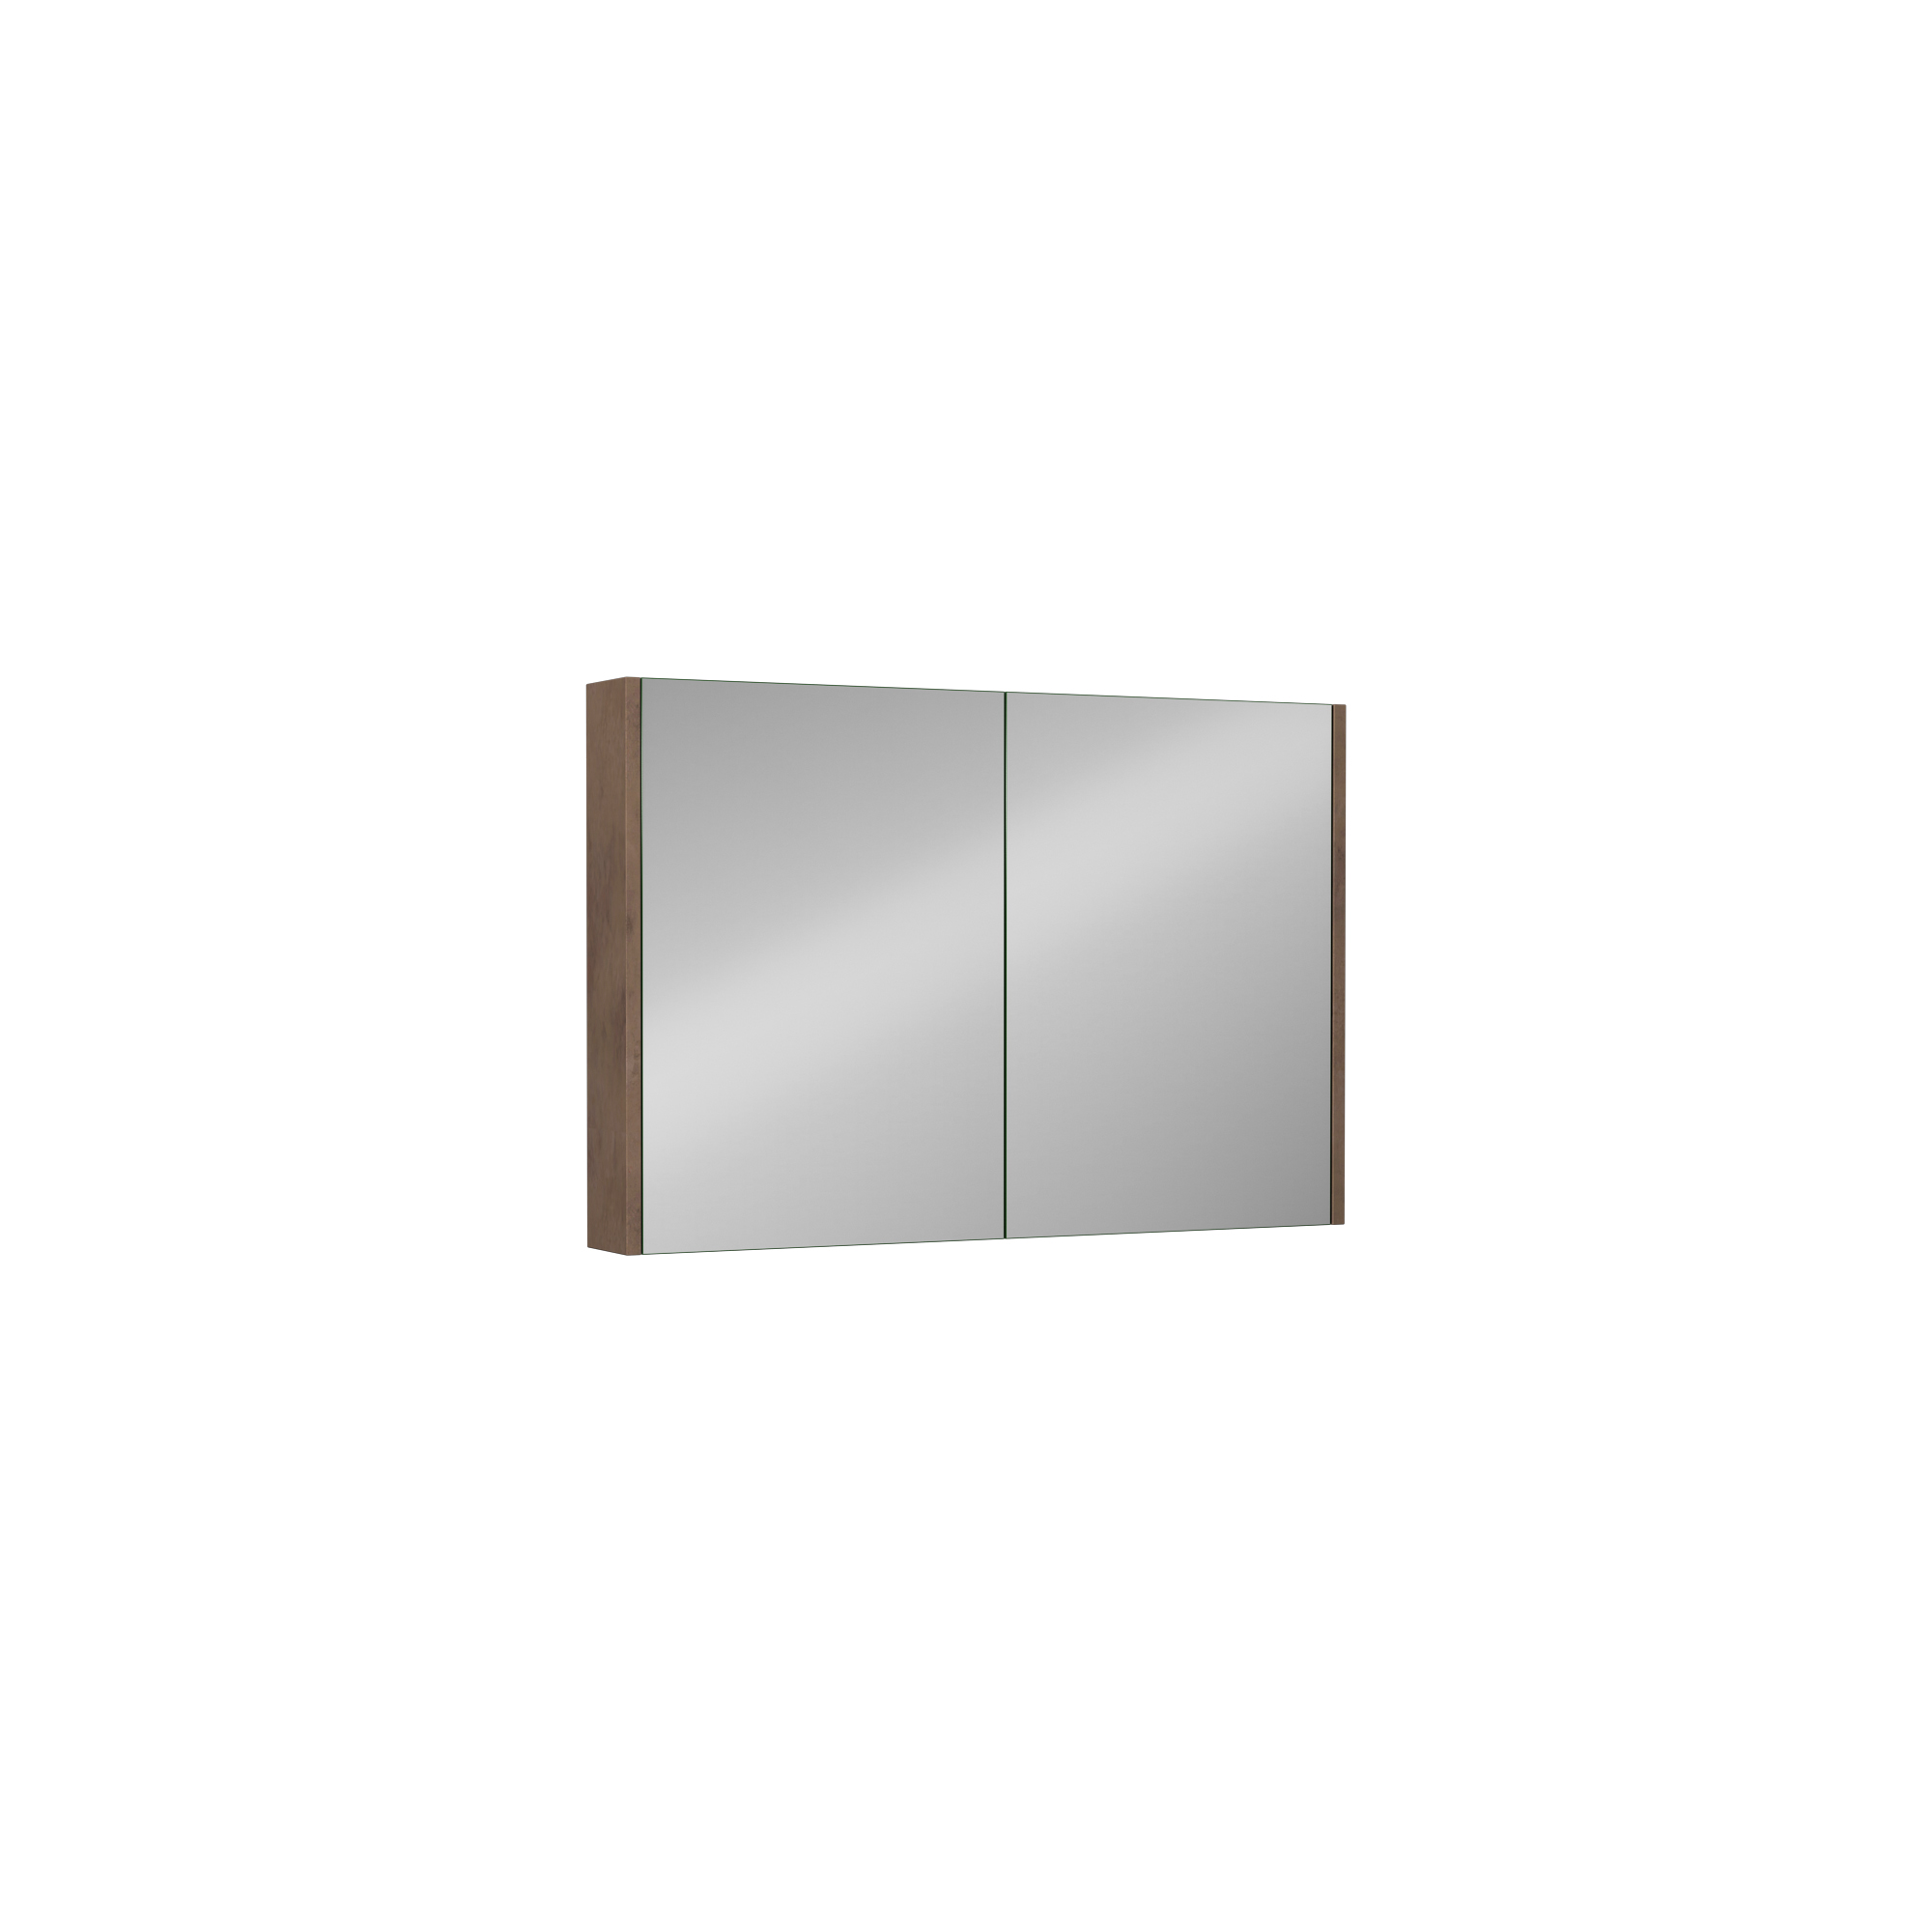 Trio + 100 cm Mirror Cabinet, Retro Silver